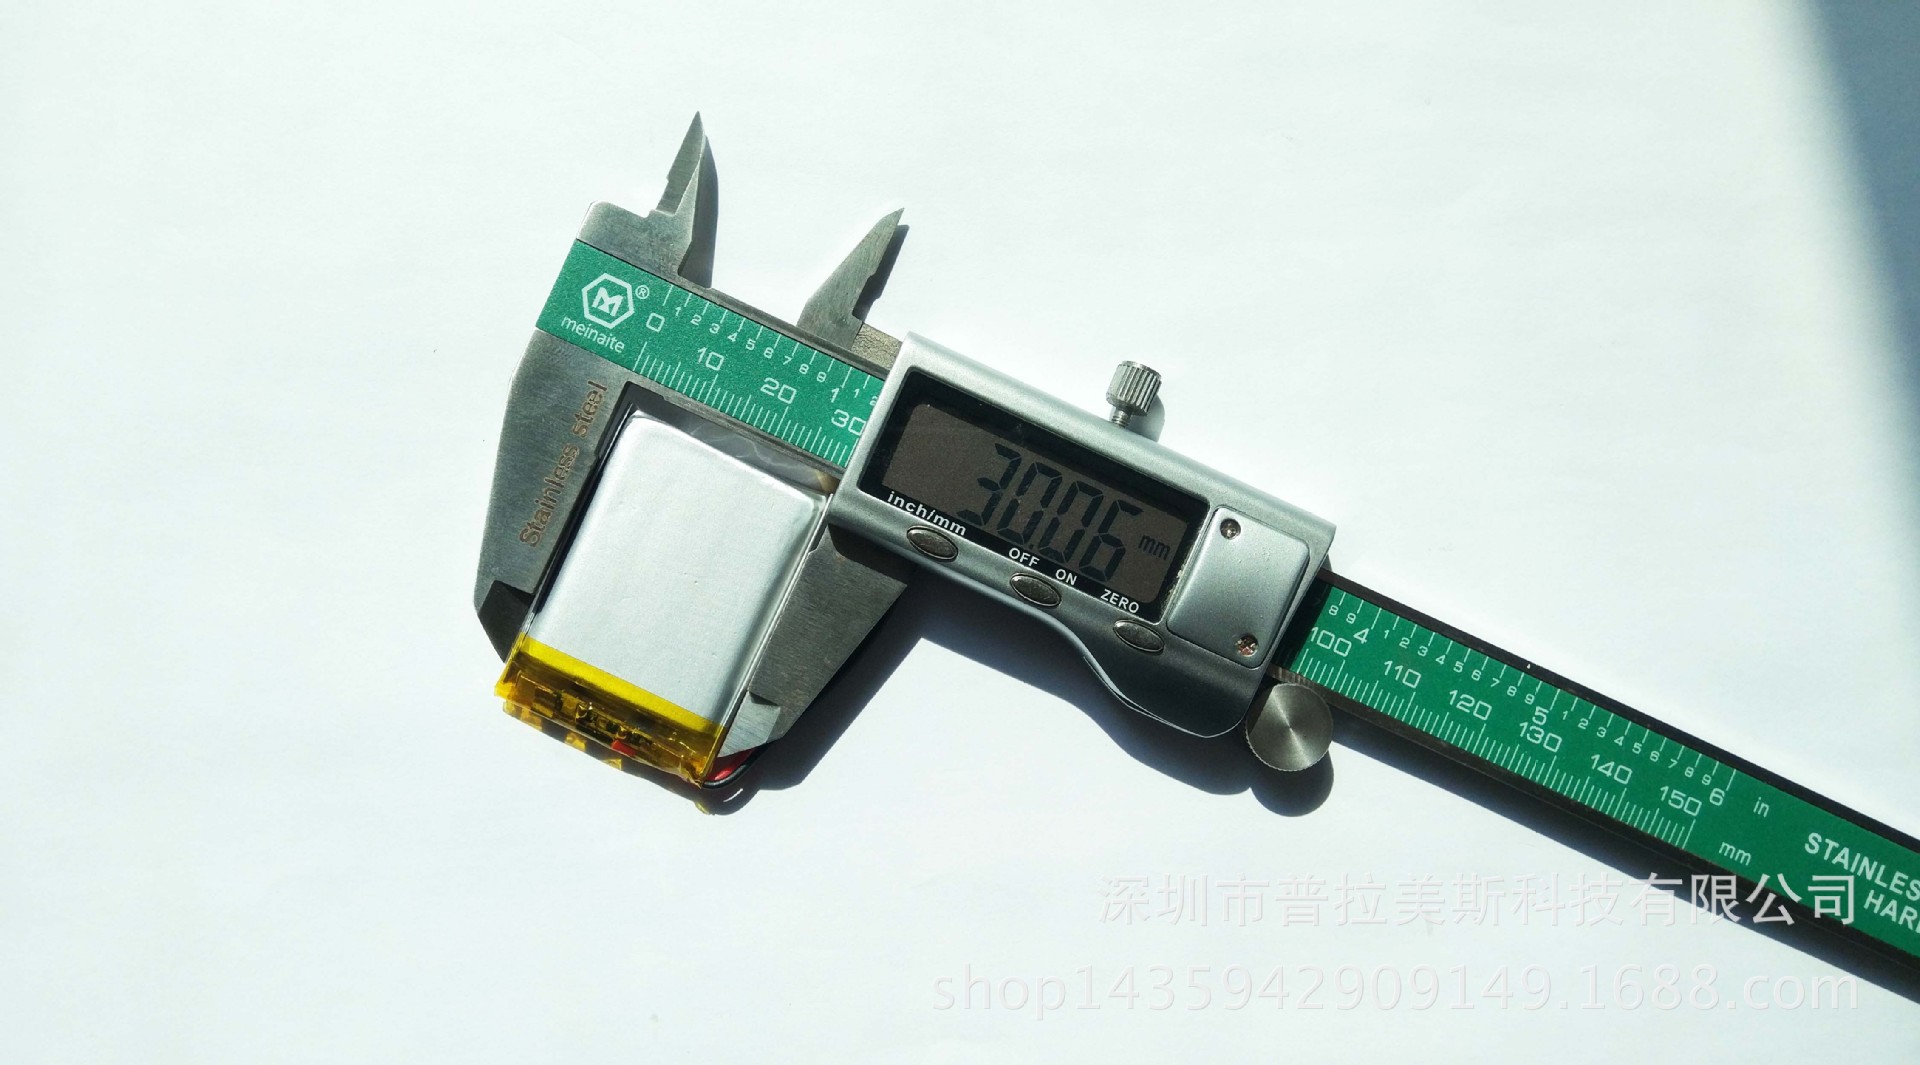 可充电聚合物锂电池603040/600MAH 美容仪按摩器蓝牙音箱手柄电池示例图7